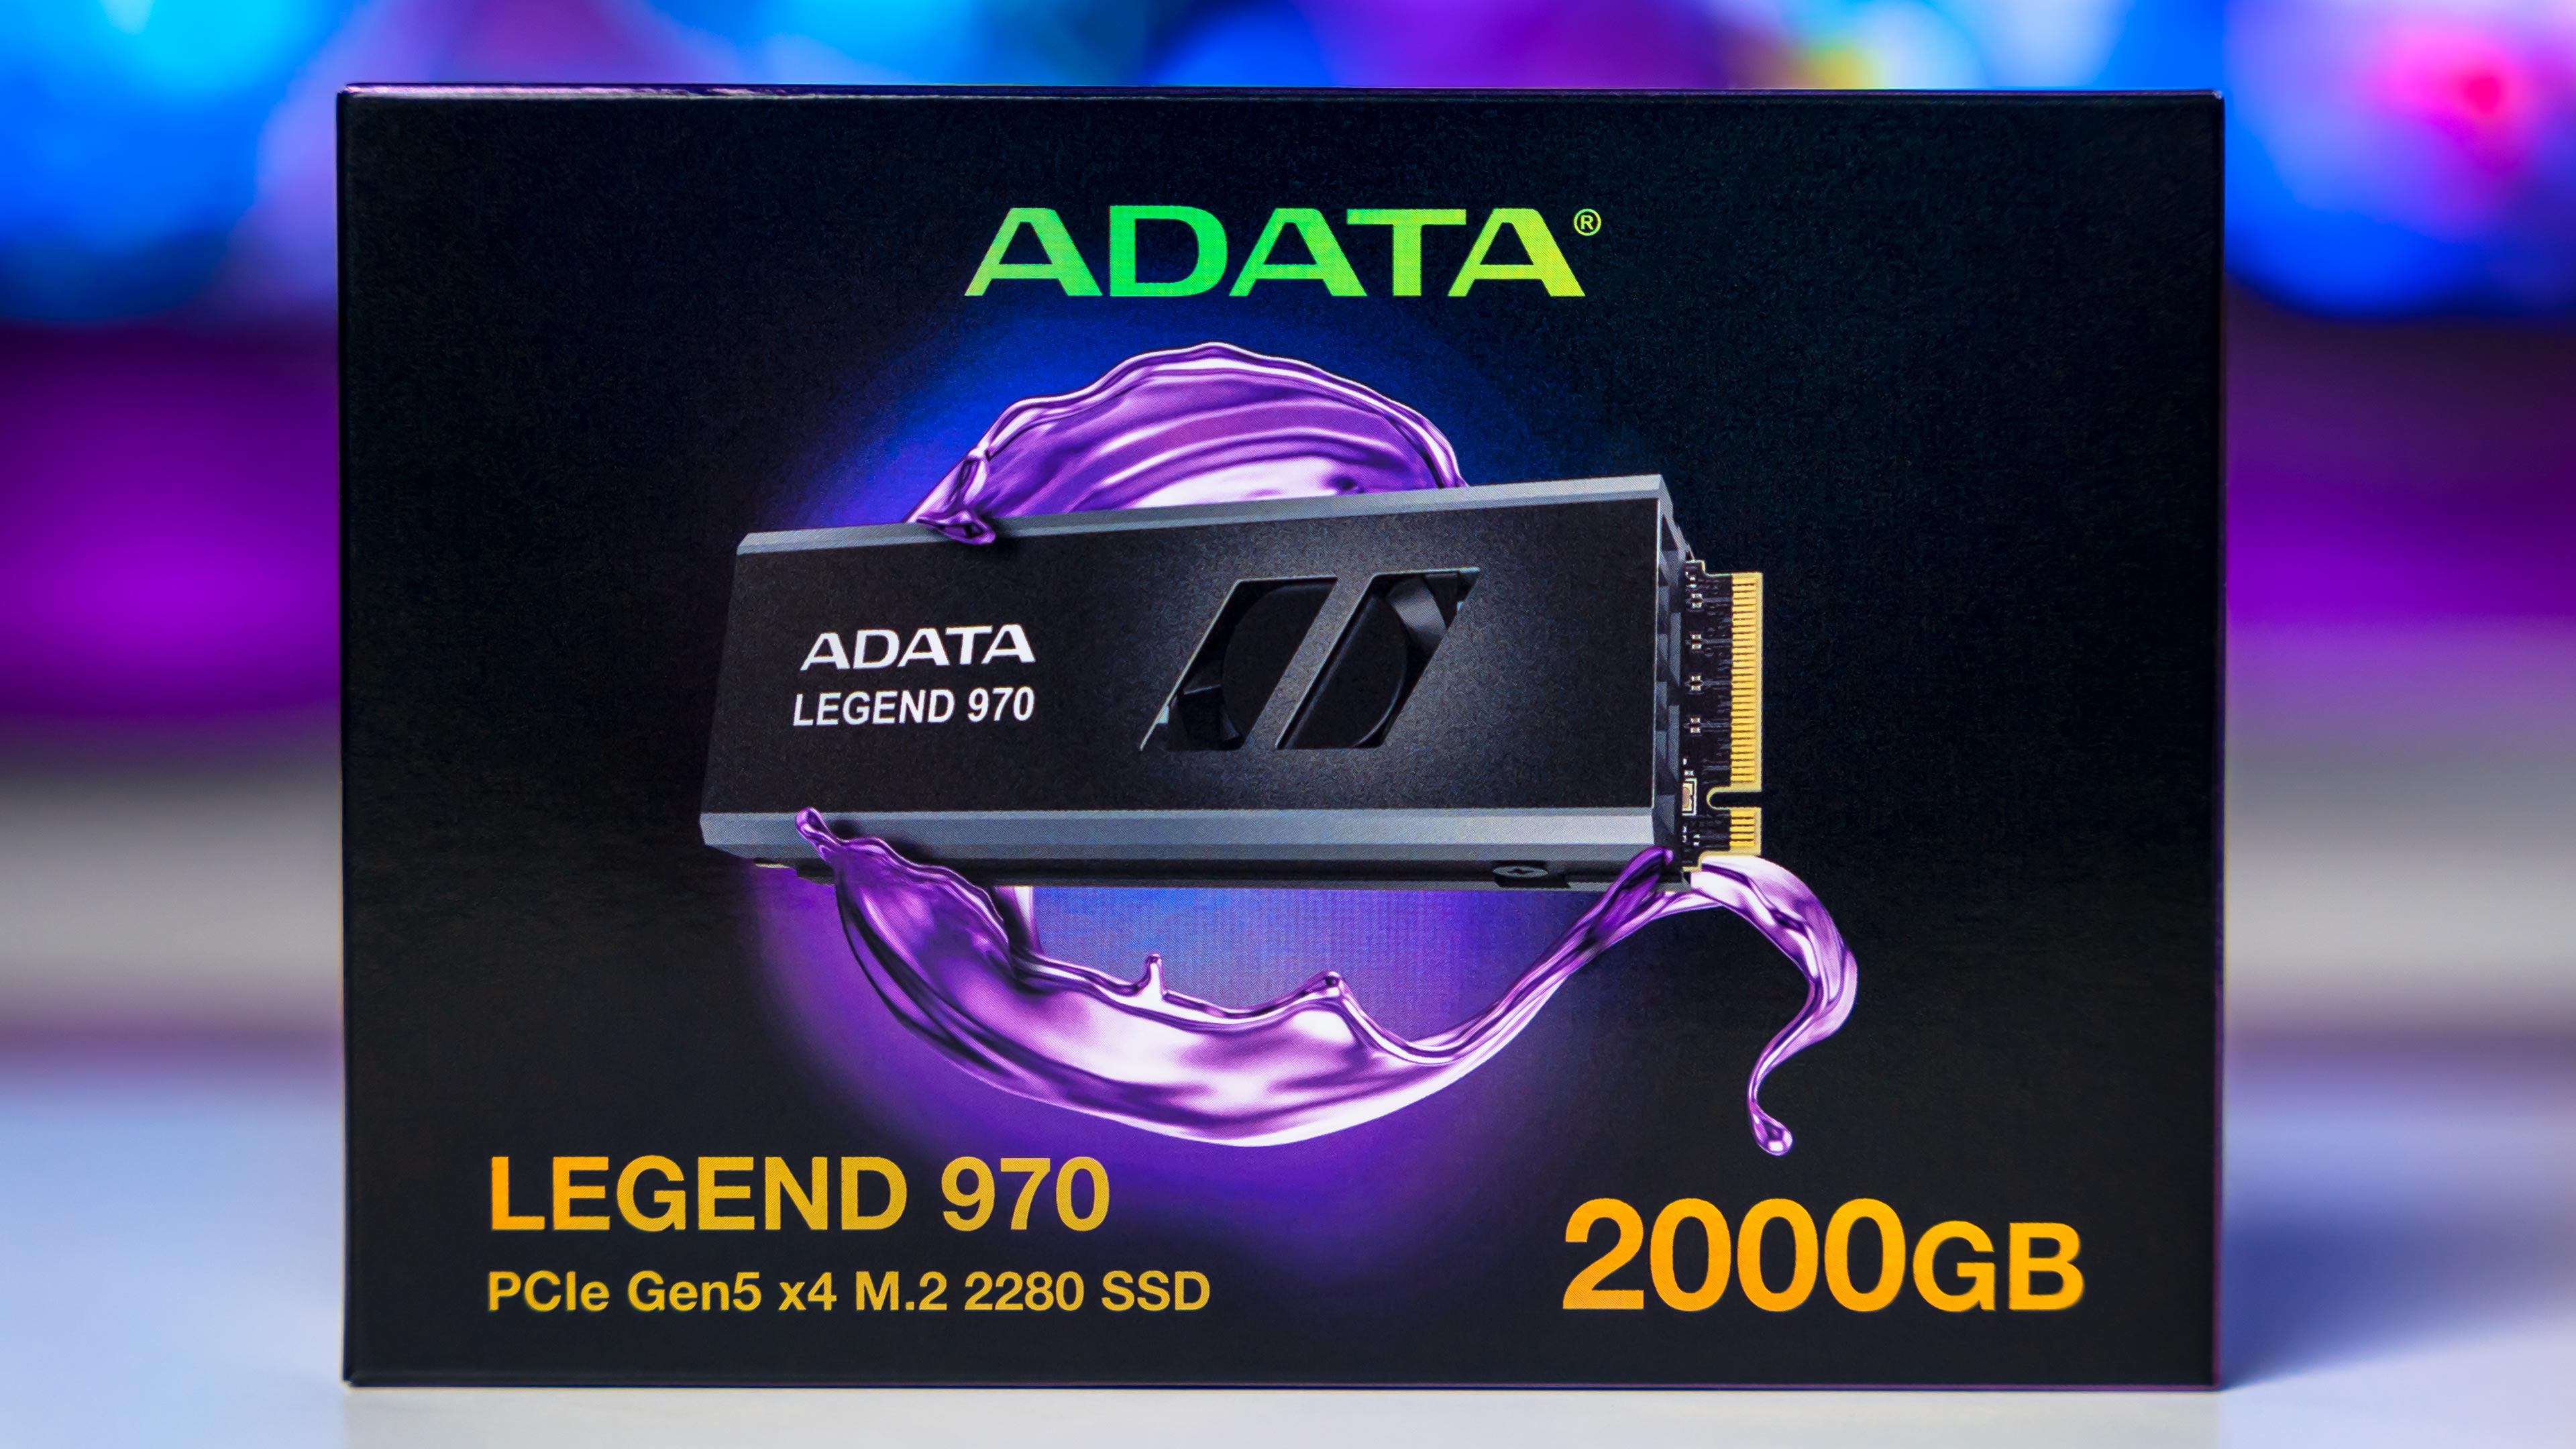 ADATA Legend 970 Box (1)